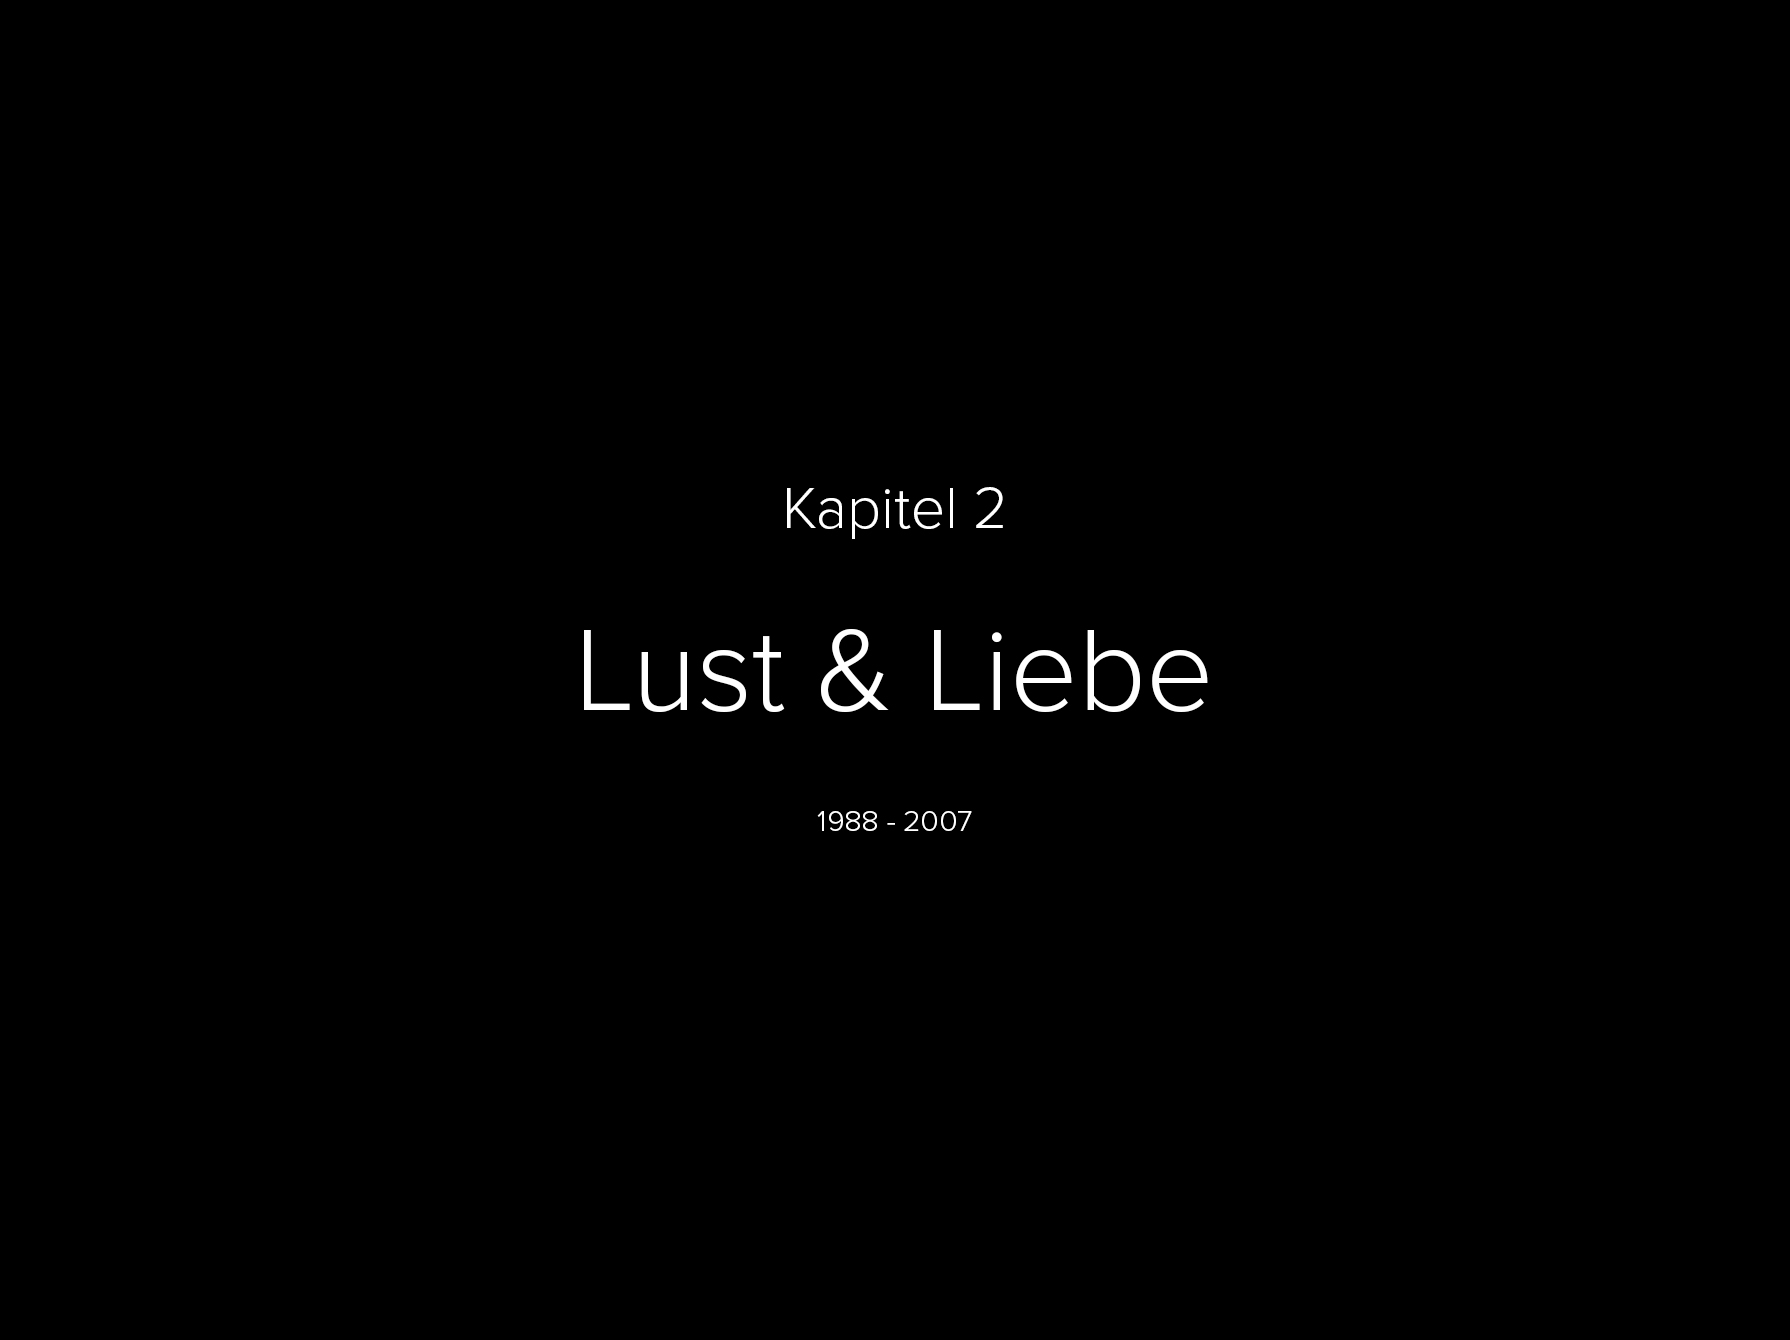 Lust & Liebe - NFT-Kunst, Raphael Dudler, Schweizer NFT Künstler zum Thema Liebe